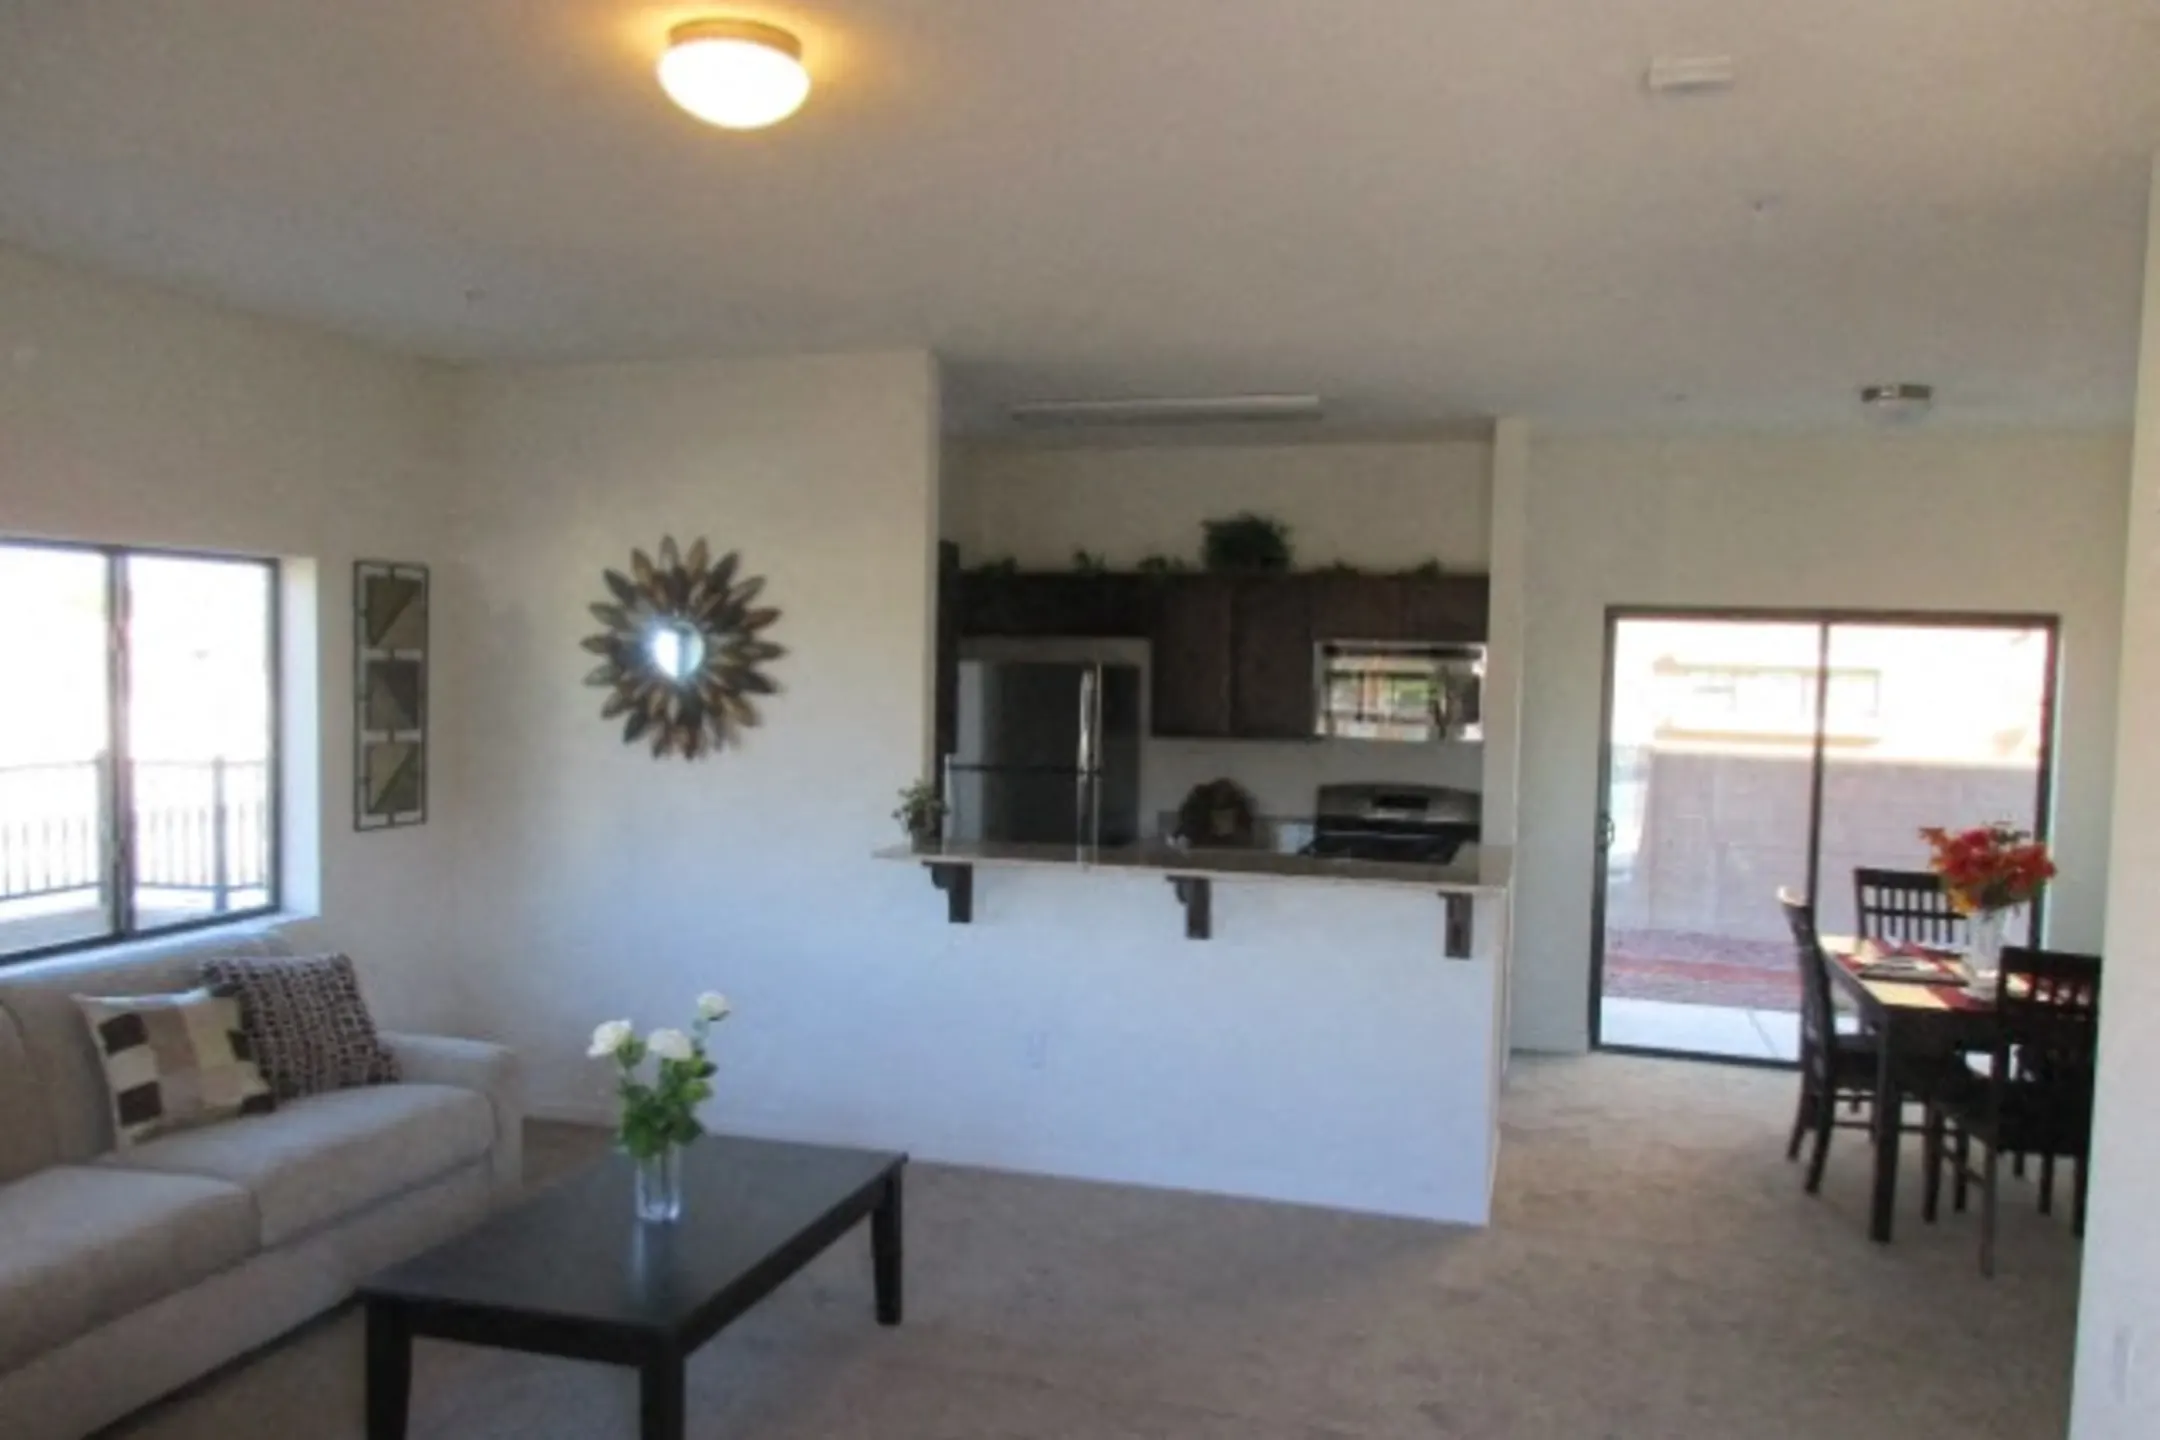 Living Room - Rome Park Villas - North Las Vegas, NV